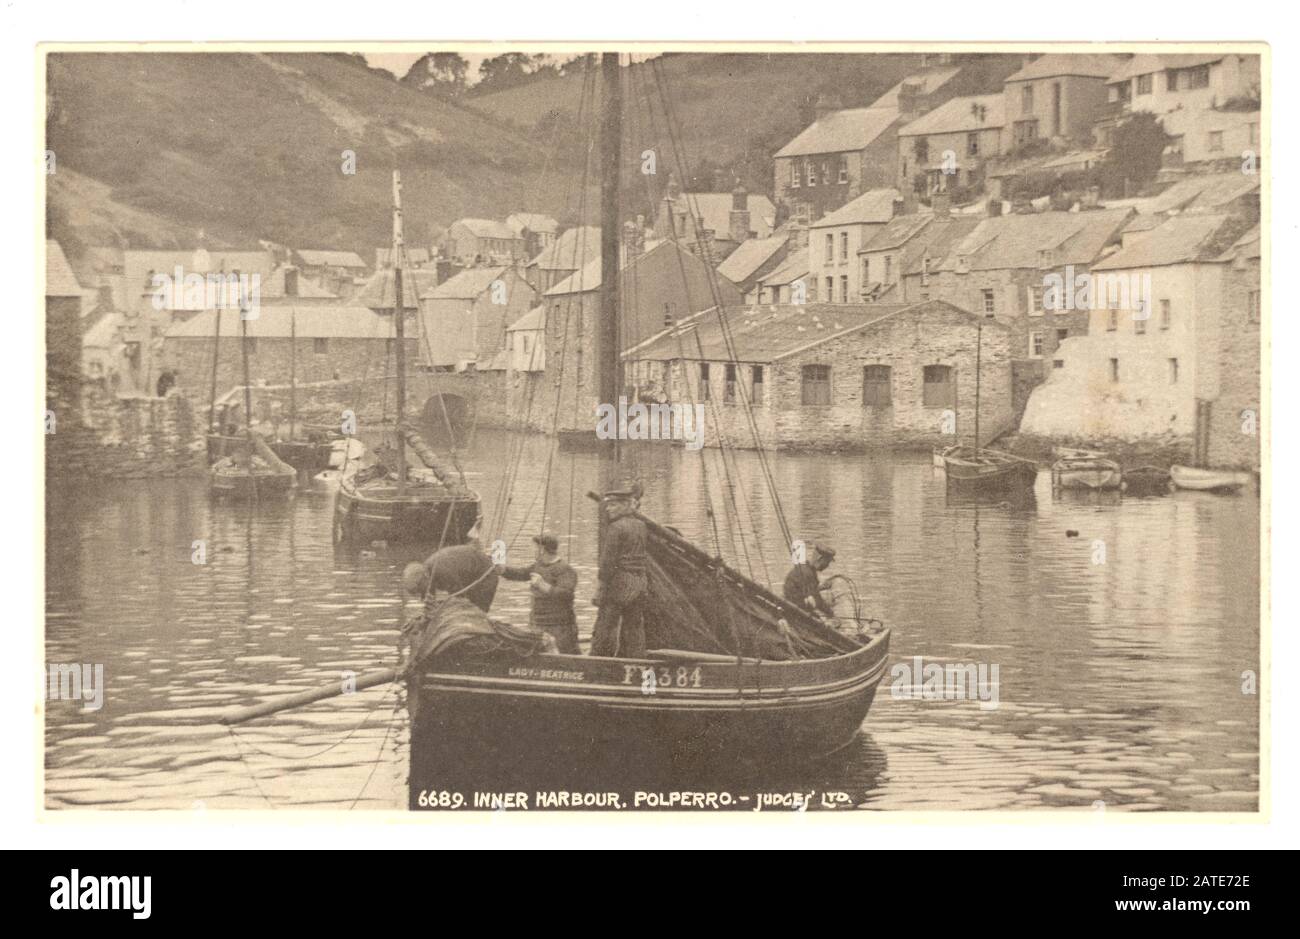 Postkarte des frühen 20. Jahrhunderts mit malerischem Binnenhafen, mit Fischer und seinem Boot, Polperro, Cornwall, England, Großbritannien um 1920 Stockfoto